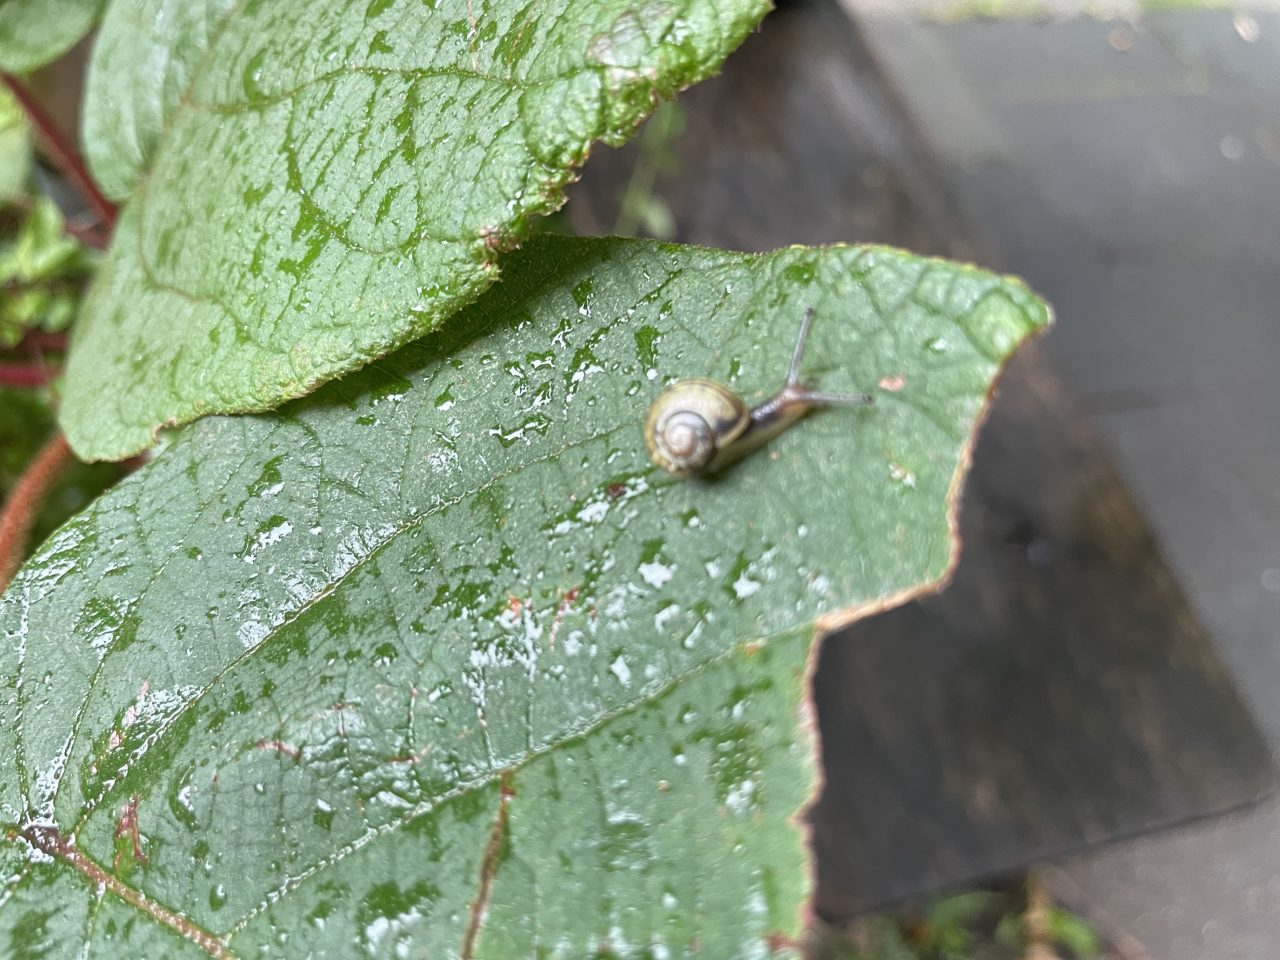 Minischnecke auf einem regennassen großen grünen Blatt